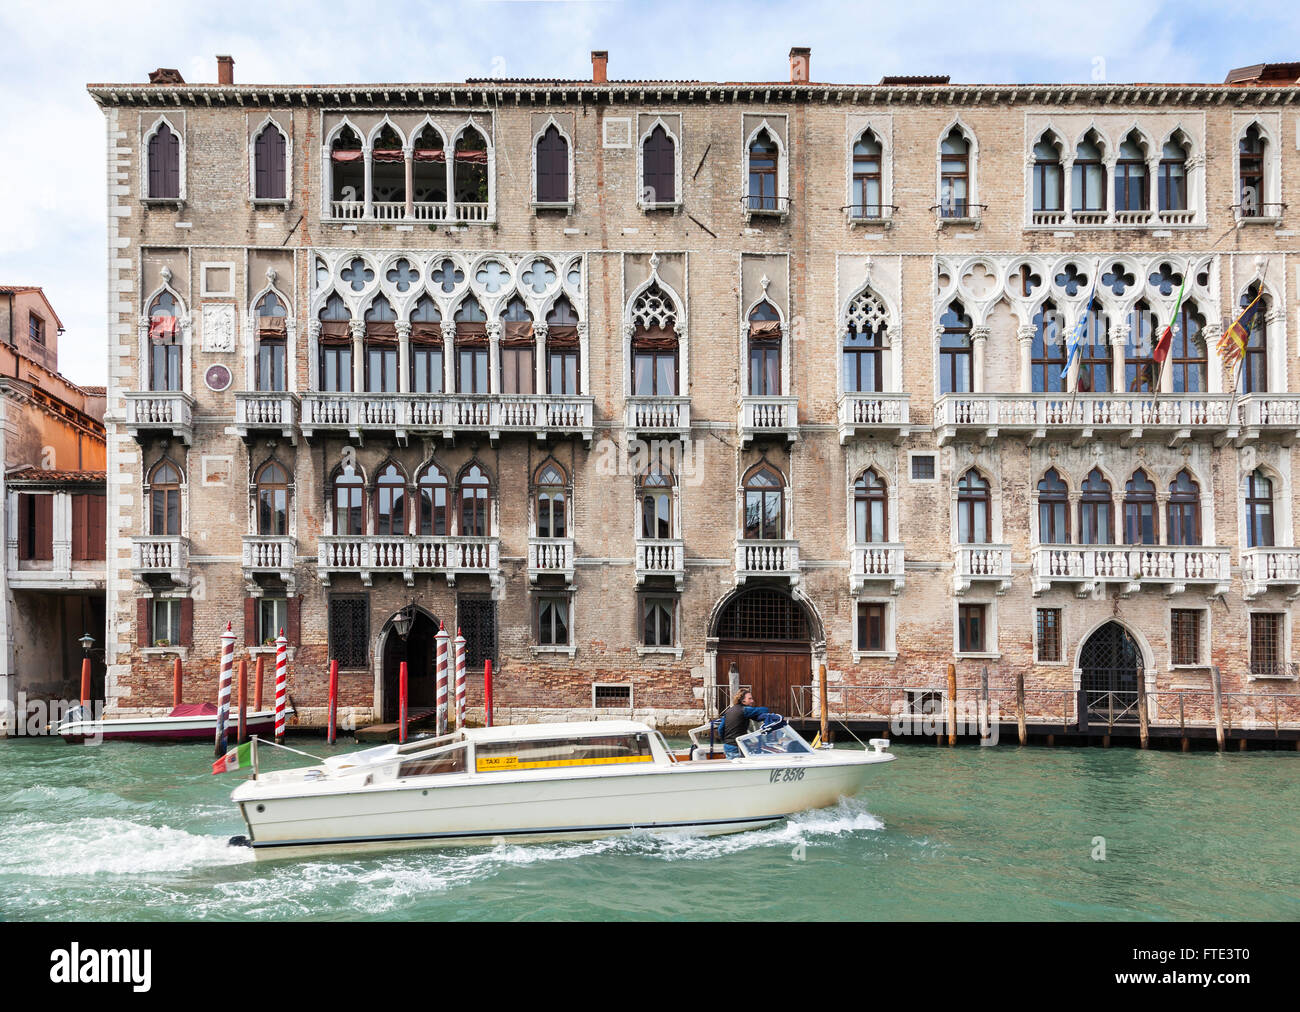 Klassisches Hafengebäude mit verzierten Fenstern und Balkonen mit roten Anlegestellen und einer vorbeifahrenden Bootsanlegestelle auf dem Canal Grande, Venedig, Italien Stockfoto